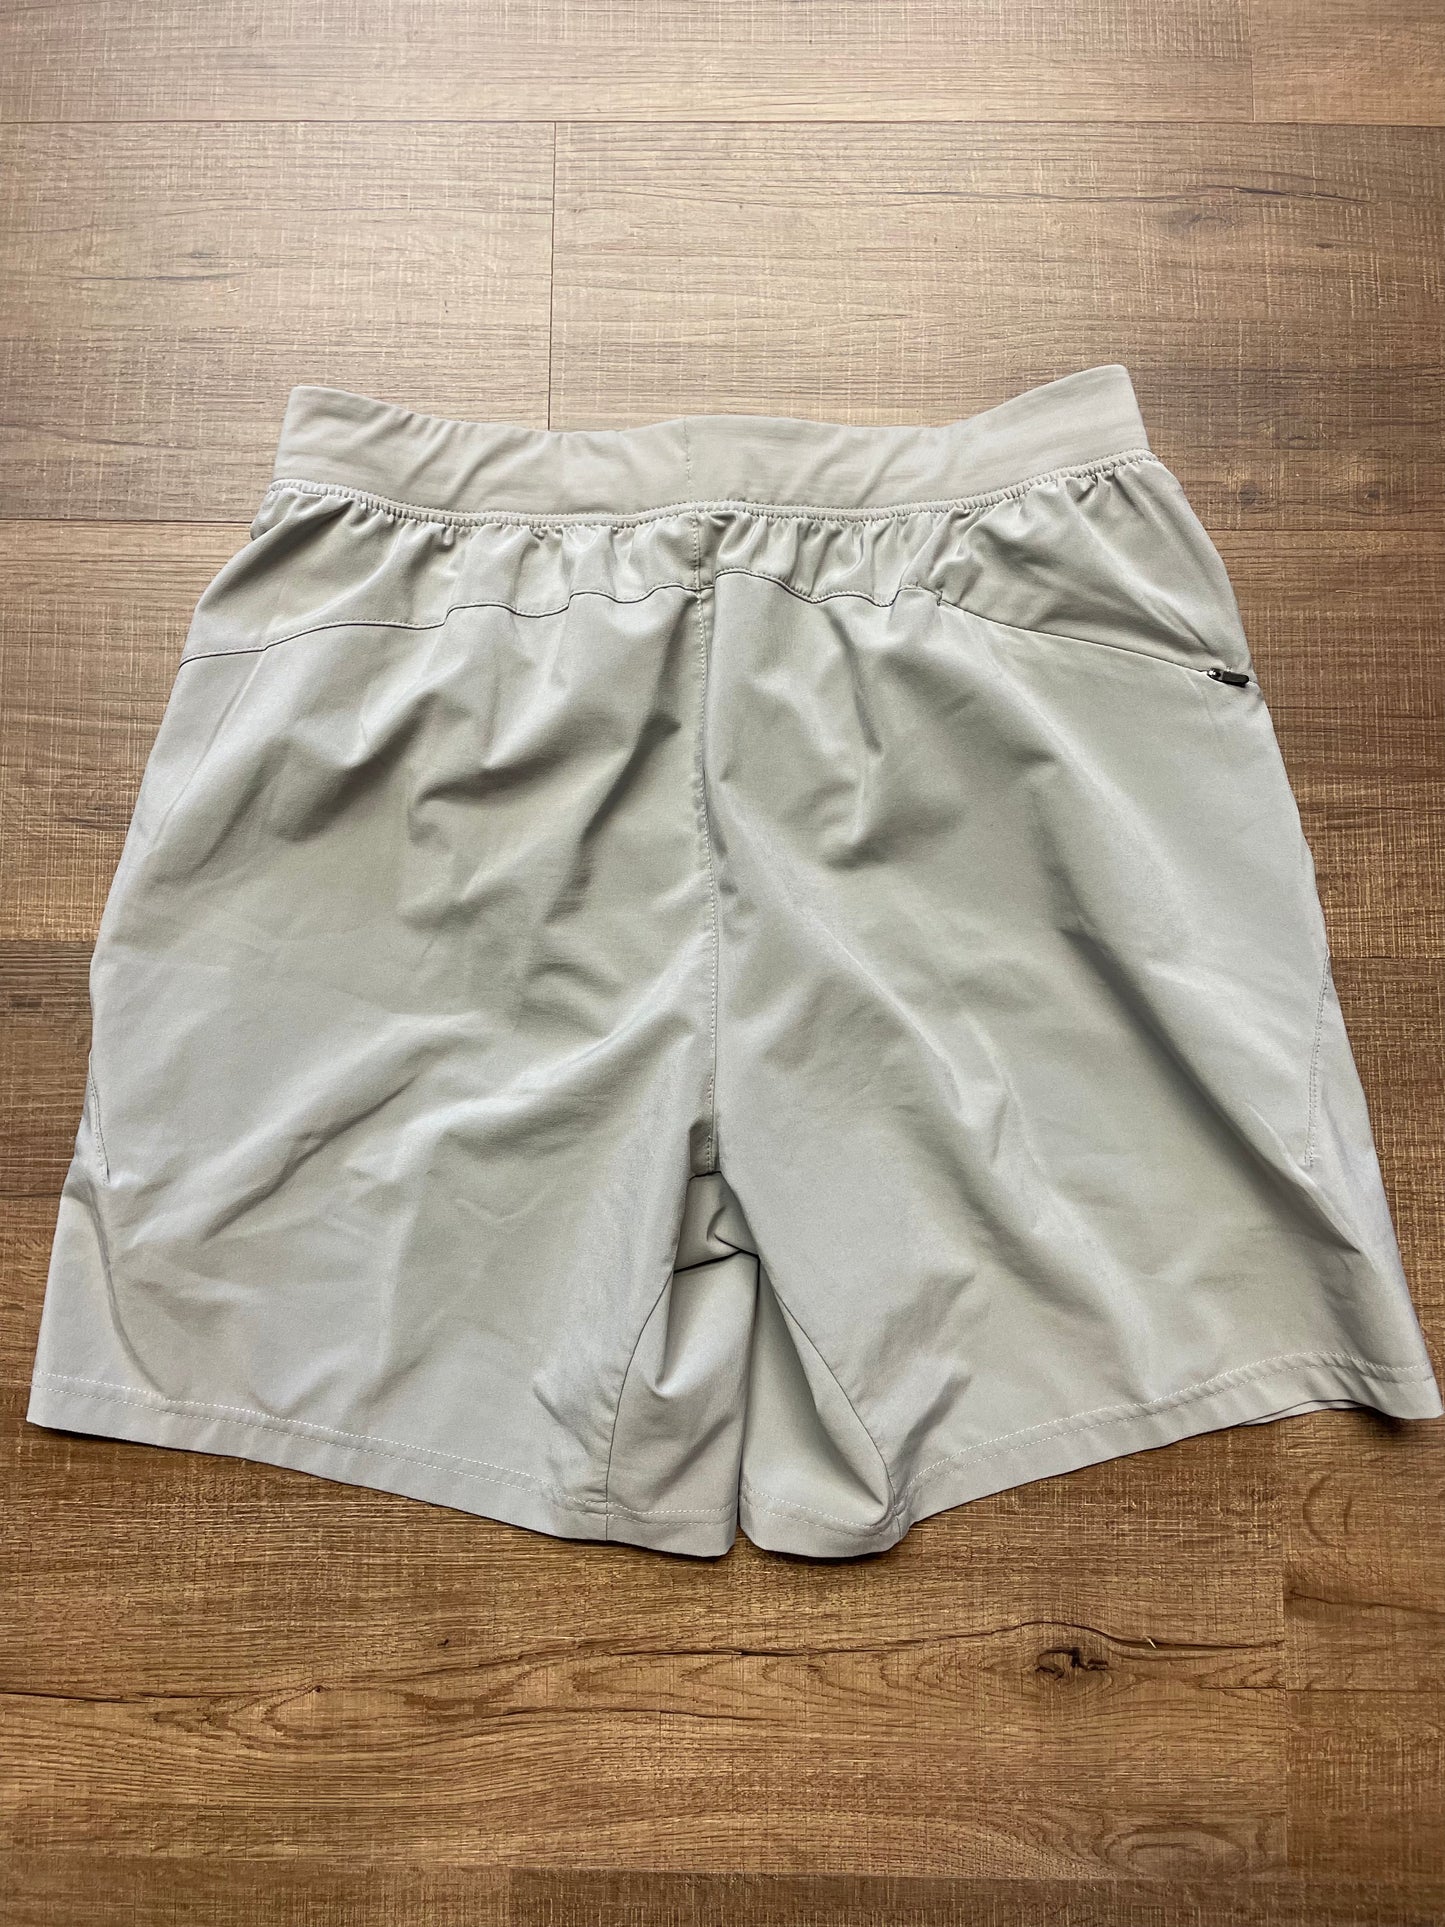 VRST Men's 7" Shorts (M)